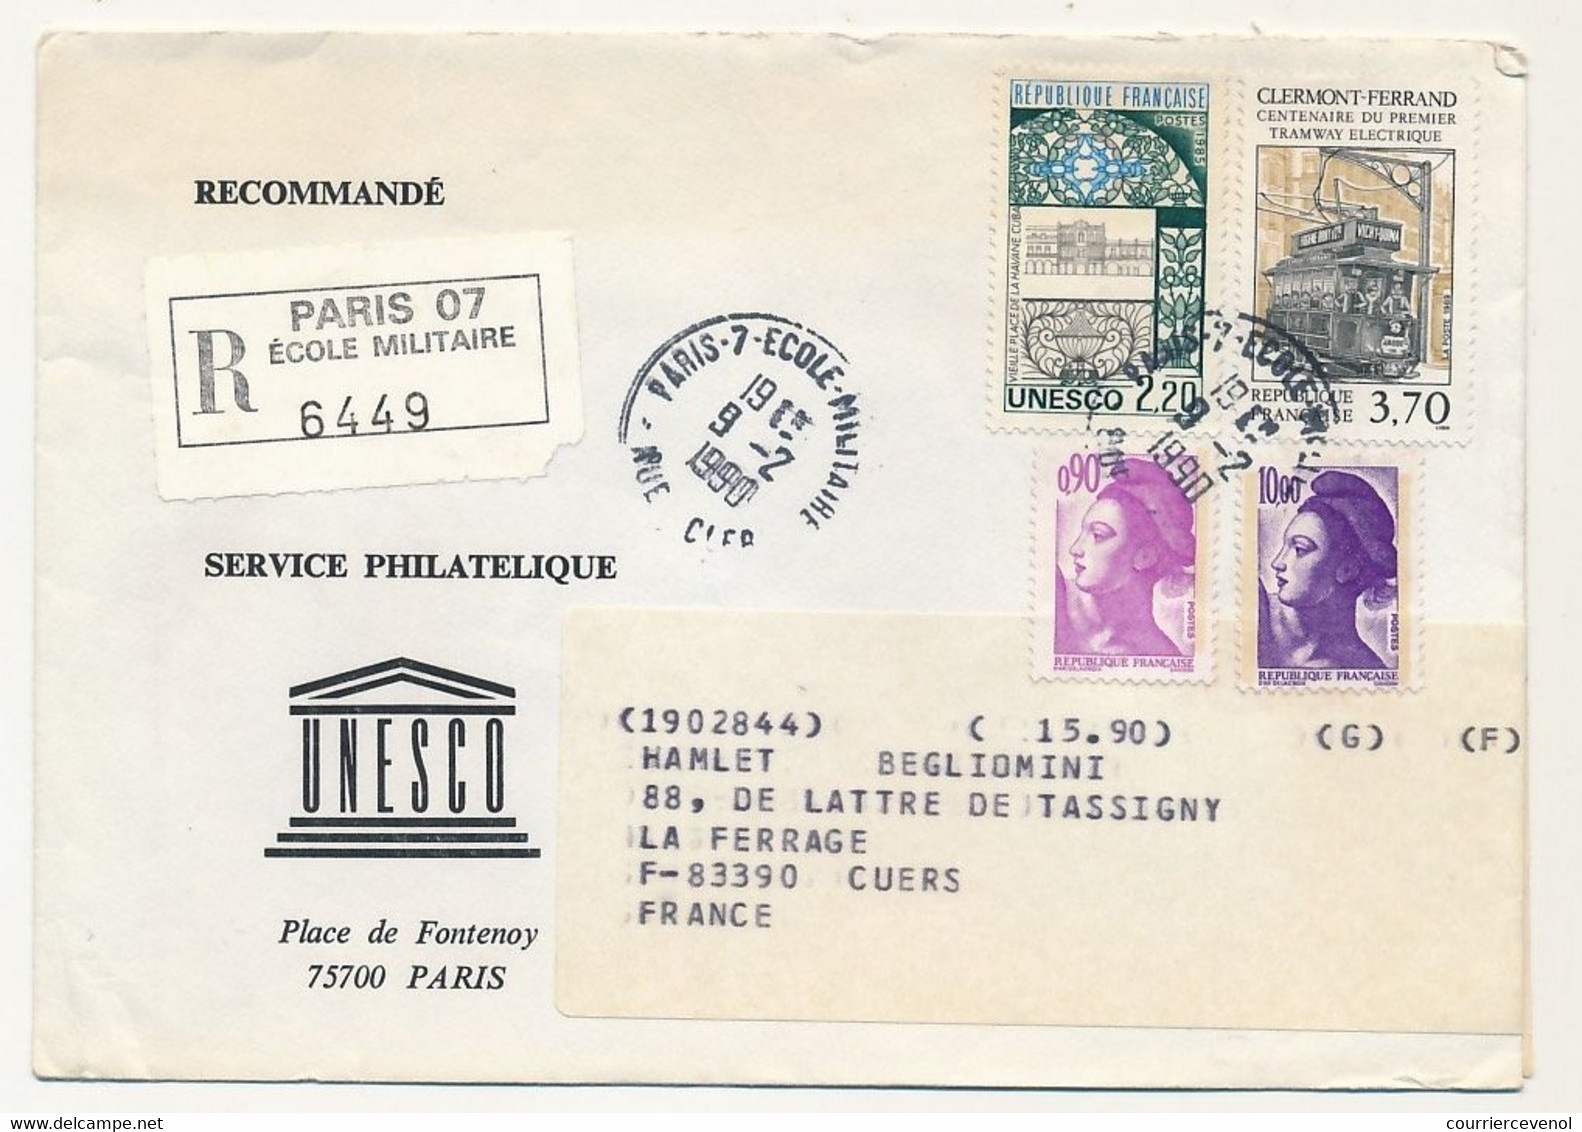 FRANCE - UNESCO - 8 Enveloppes Service Philatélique Unesco Avec Timbres De Service - Obl Paris 7 Rue Clerc - 1989/90 - Covers & Documents